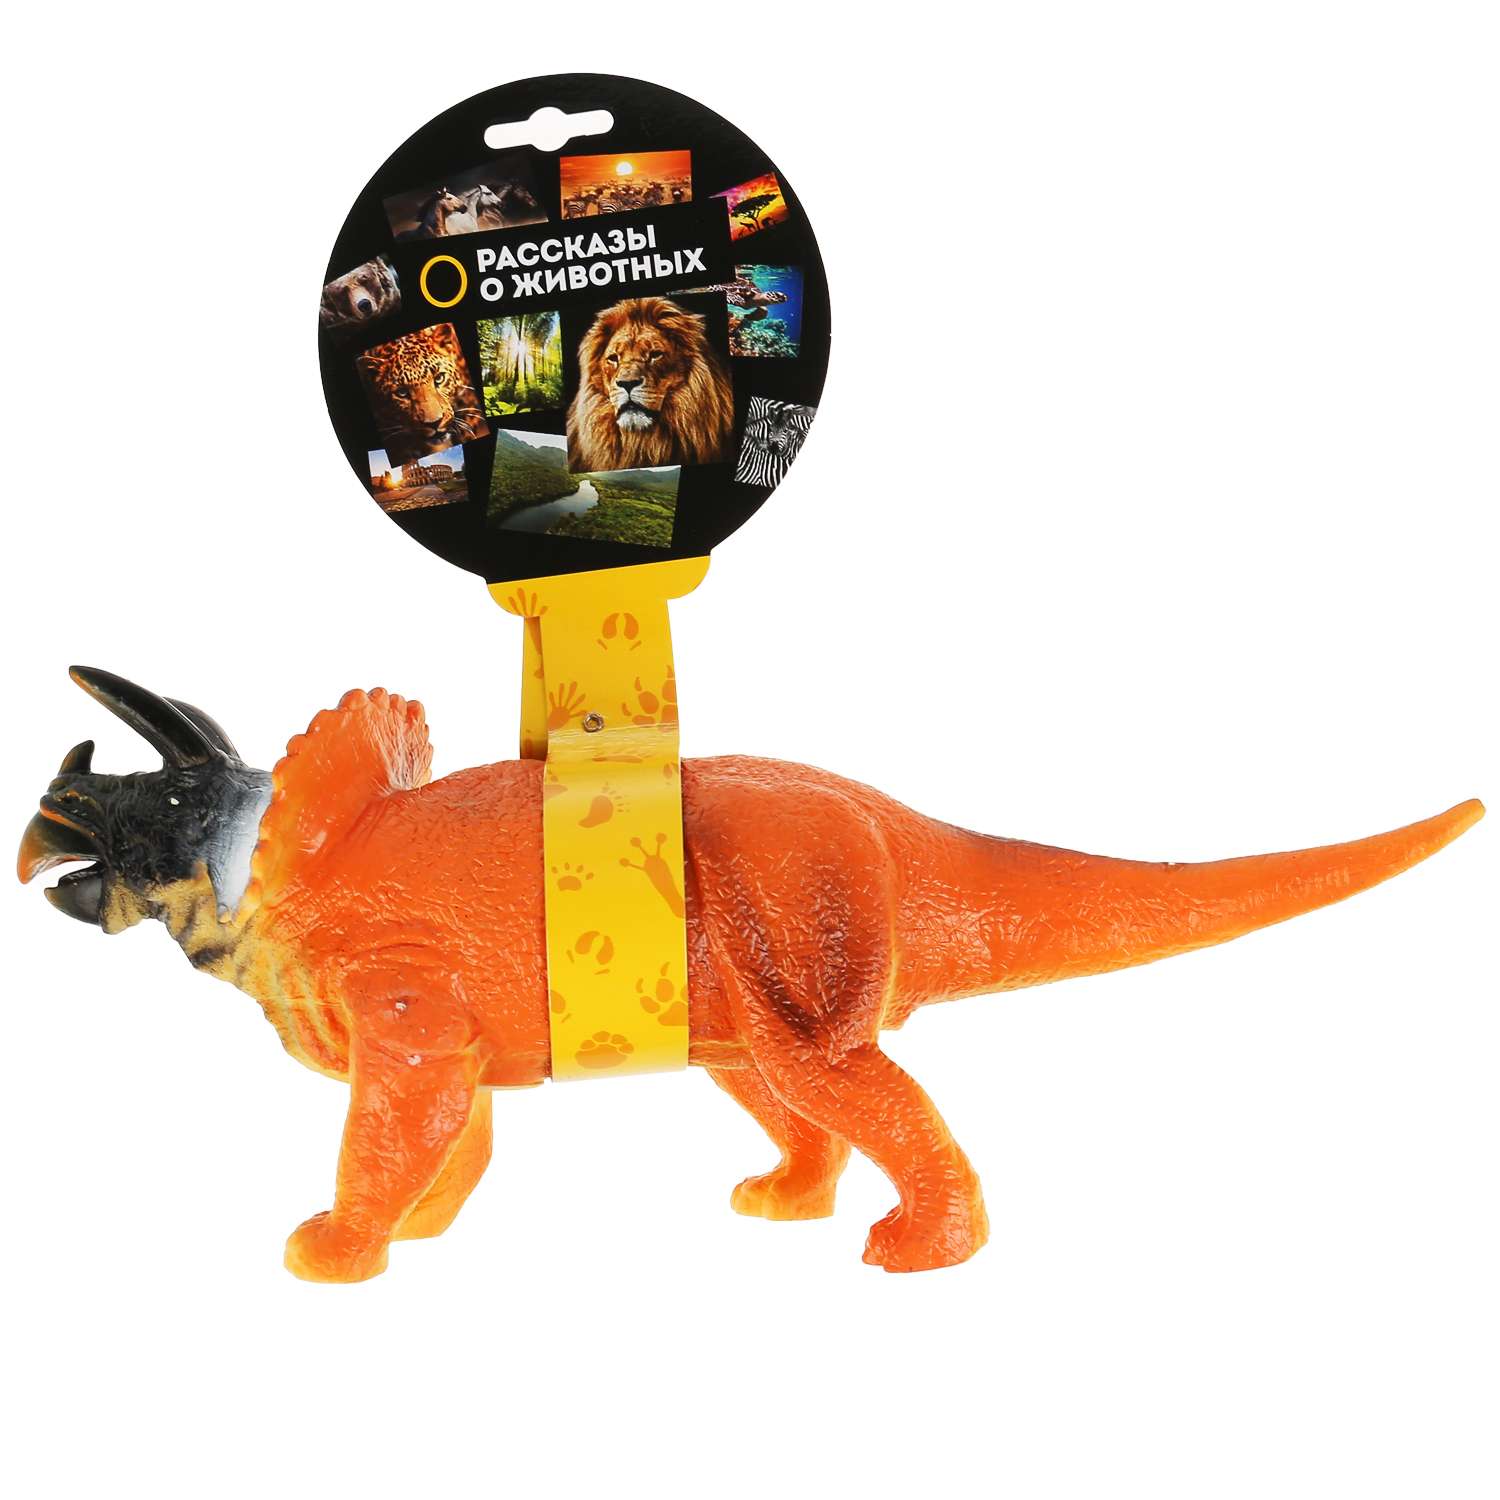 Игрушка Играем Вместе Пластизоль динозавр паразауролофы 298170 - фото 2